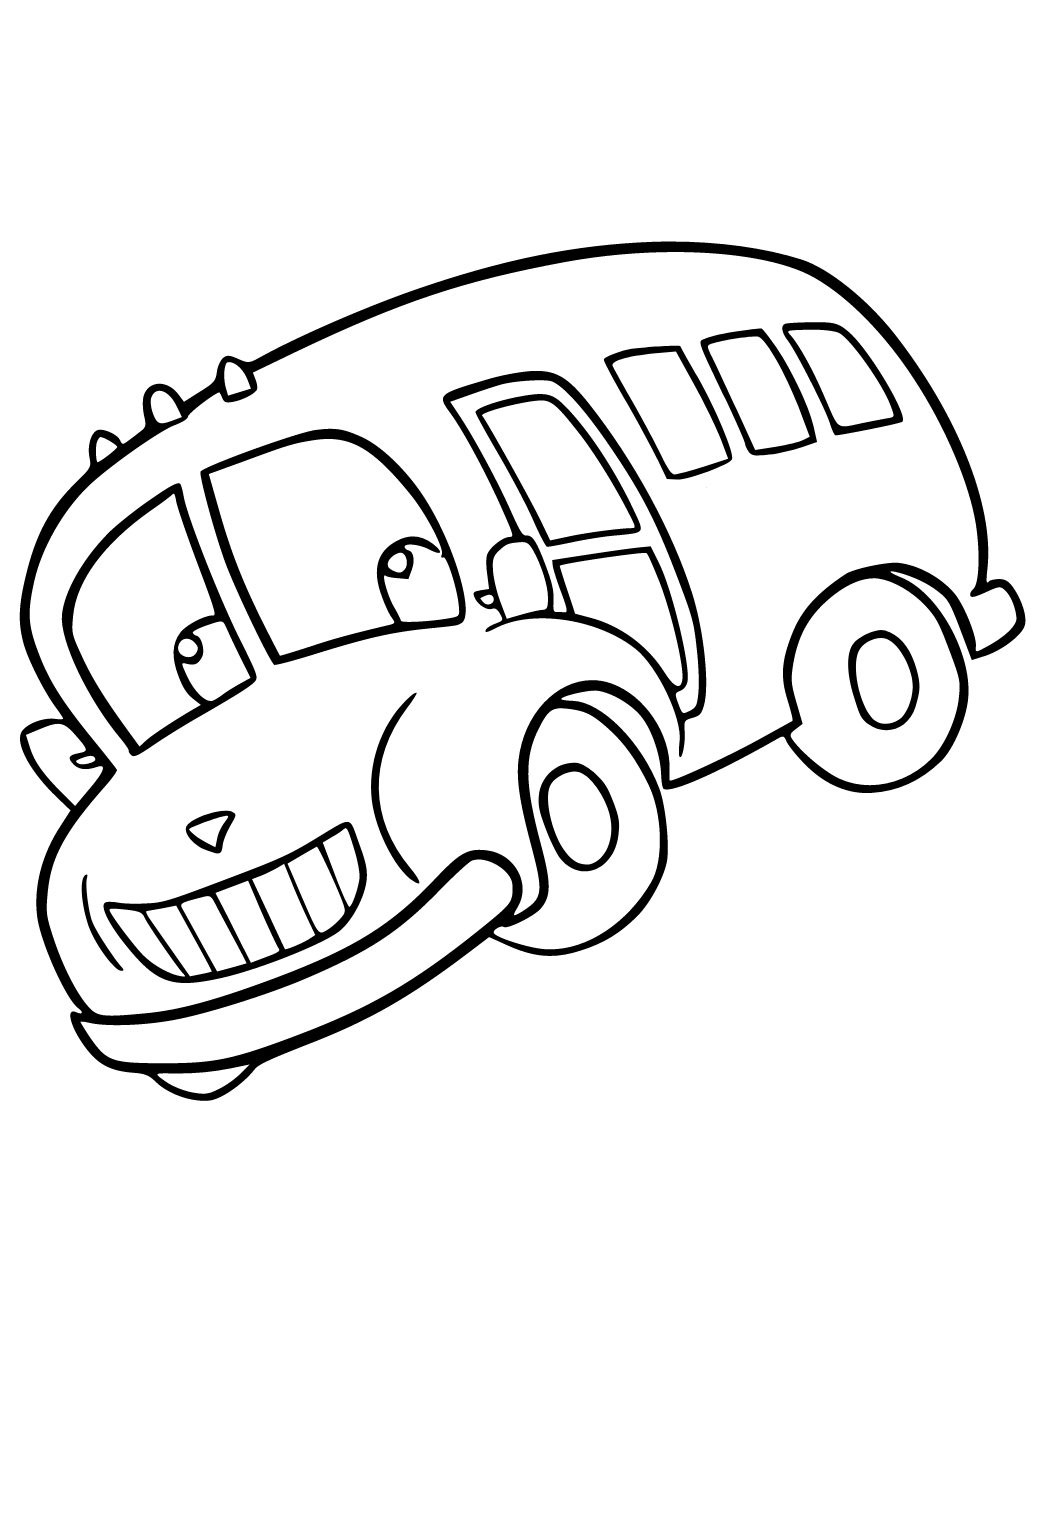 Отличительной чертой новых школьных автобусов станут веселые рисунки